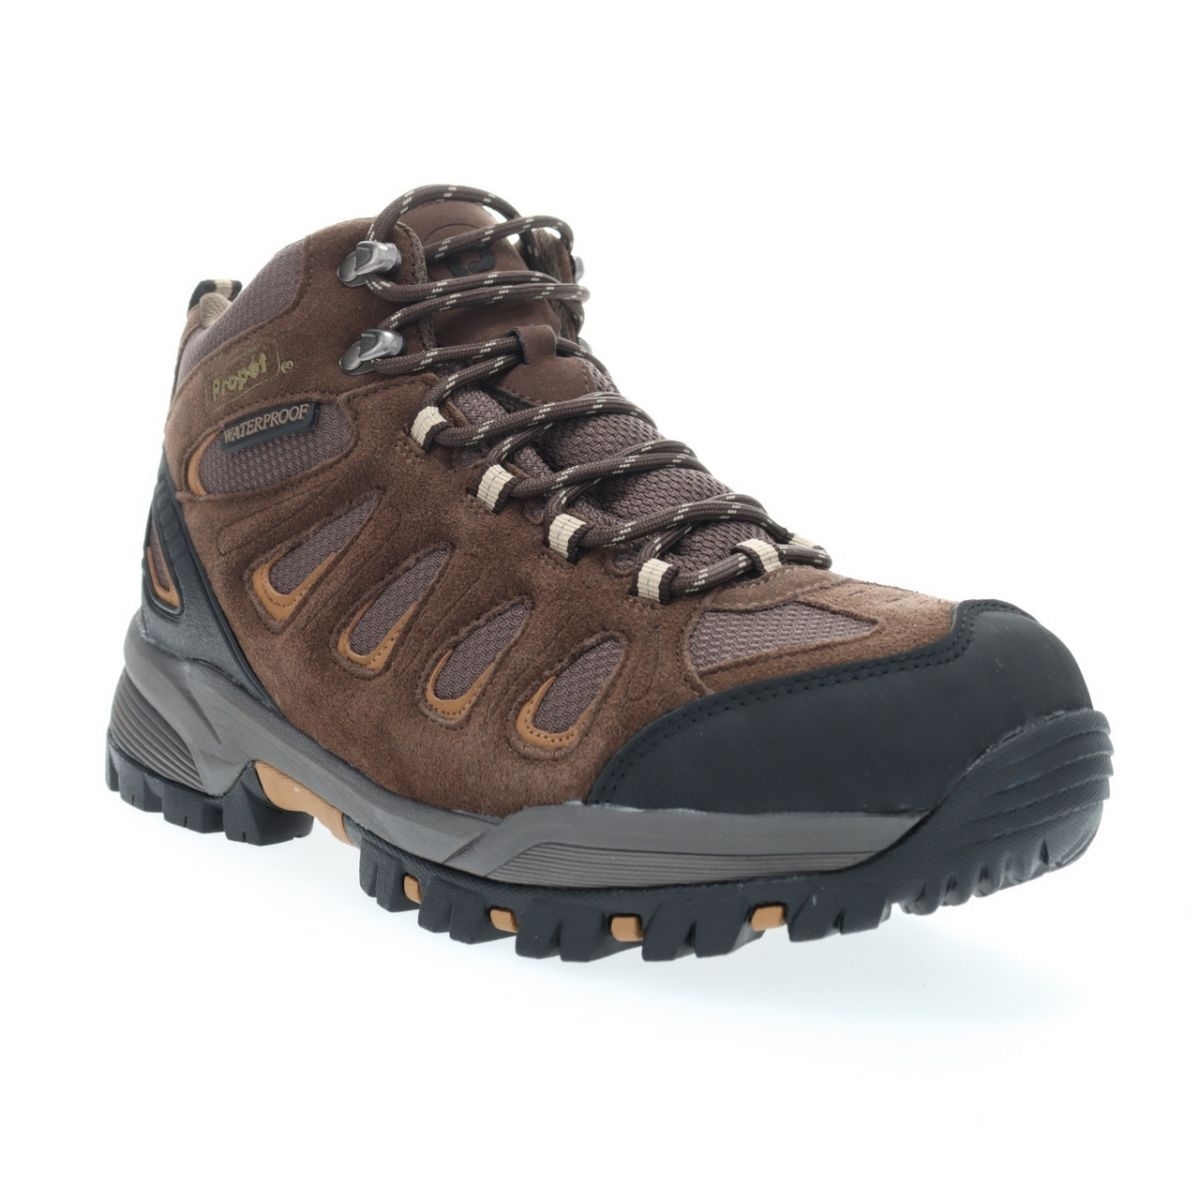 Propet Men's Ridge Walker Hiking Boot Brown - M3599BR 8 XX US Men BROWN - BROWN, 12